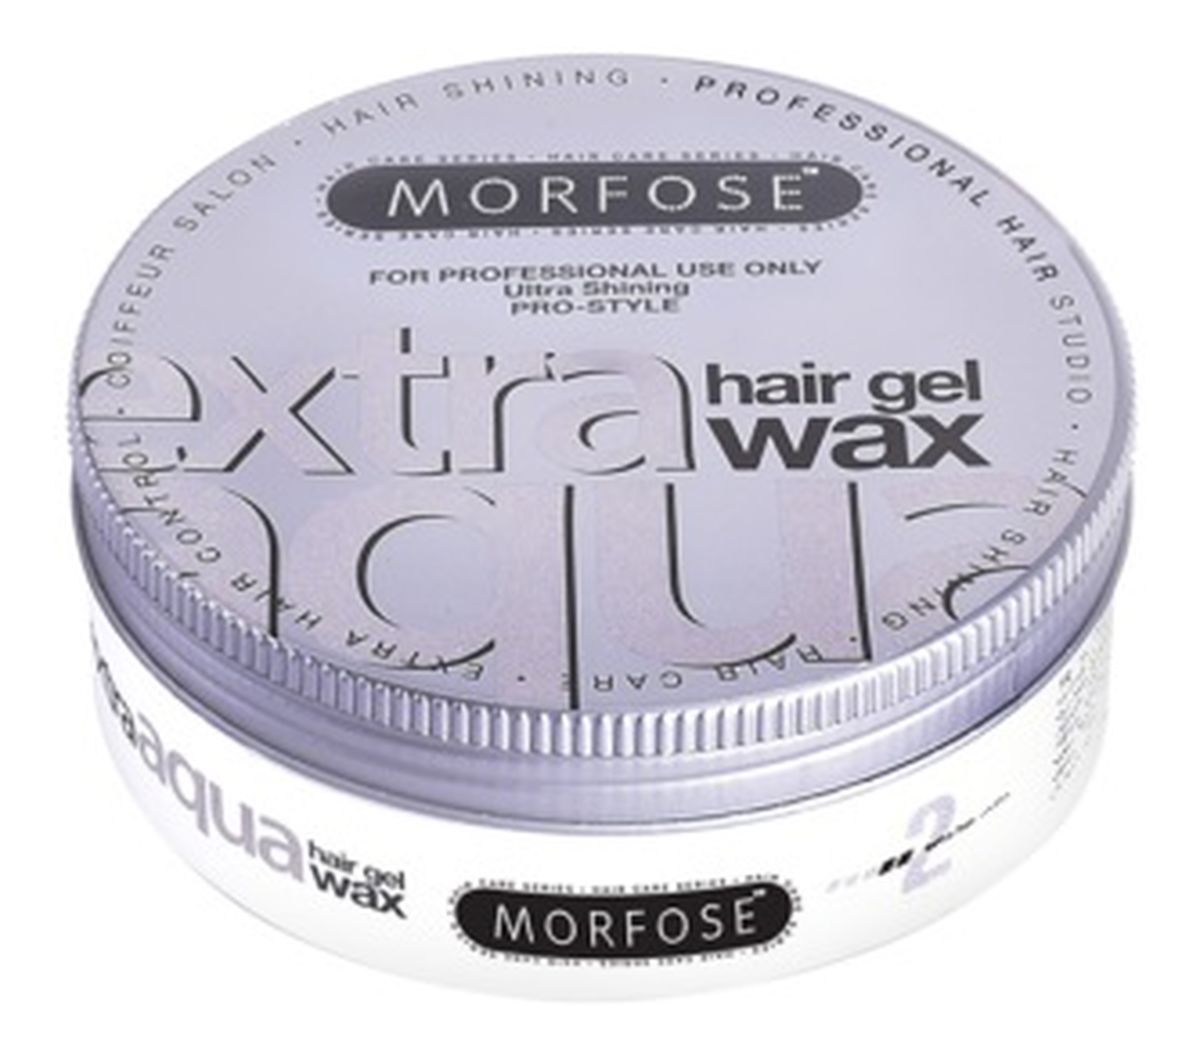 Extra aqua gel hair styling wax wosk do stylizacji włosów o zapachu gumy balonowej extra